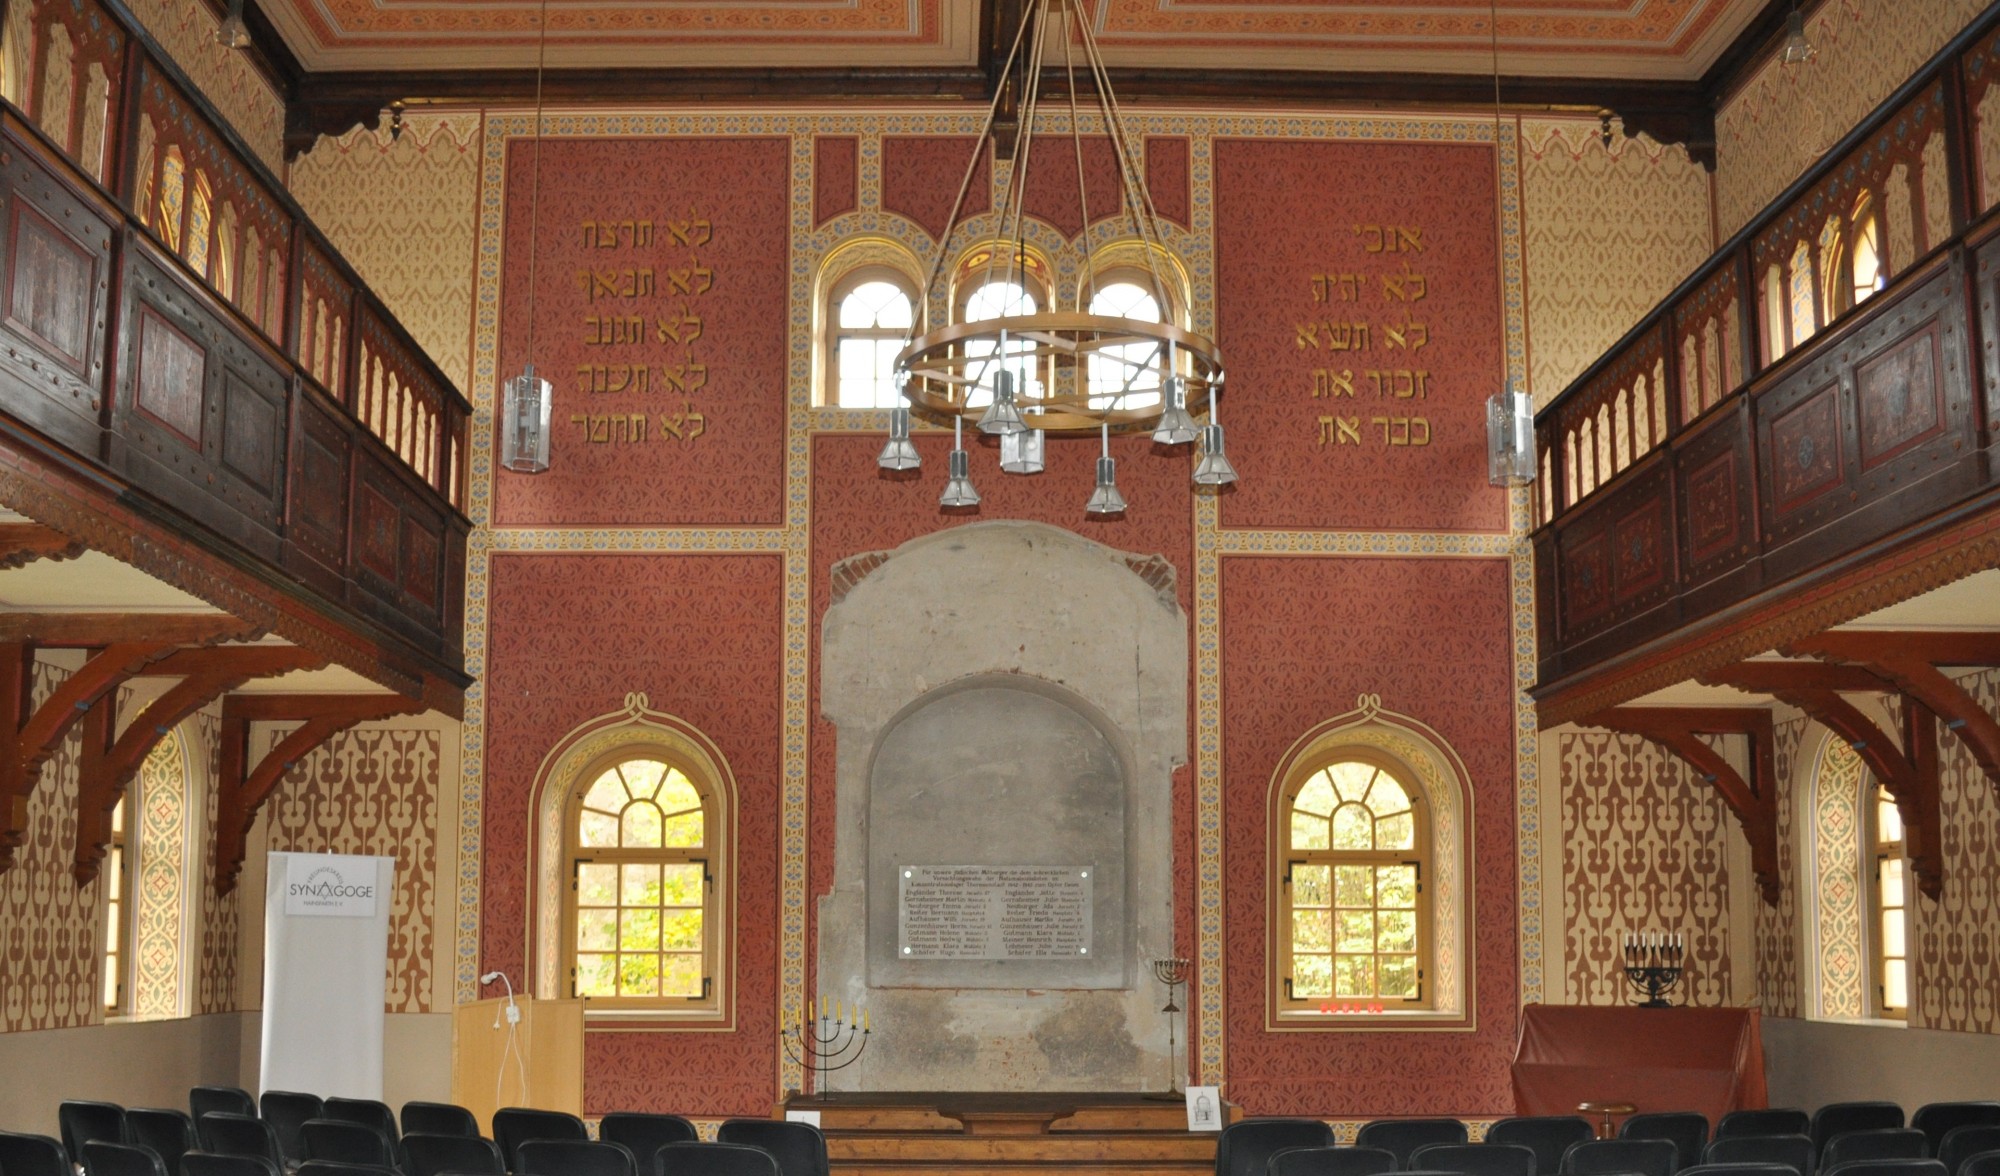 Innenraum der Synagoge Hainsfarth mit Stuhlreihen, Frauenempore und Tora-Schrein. Führt zur Unterseite &quot;Hainsfarth&quot;.